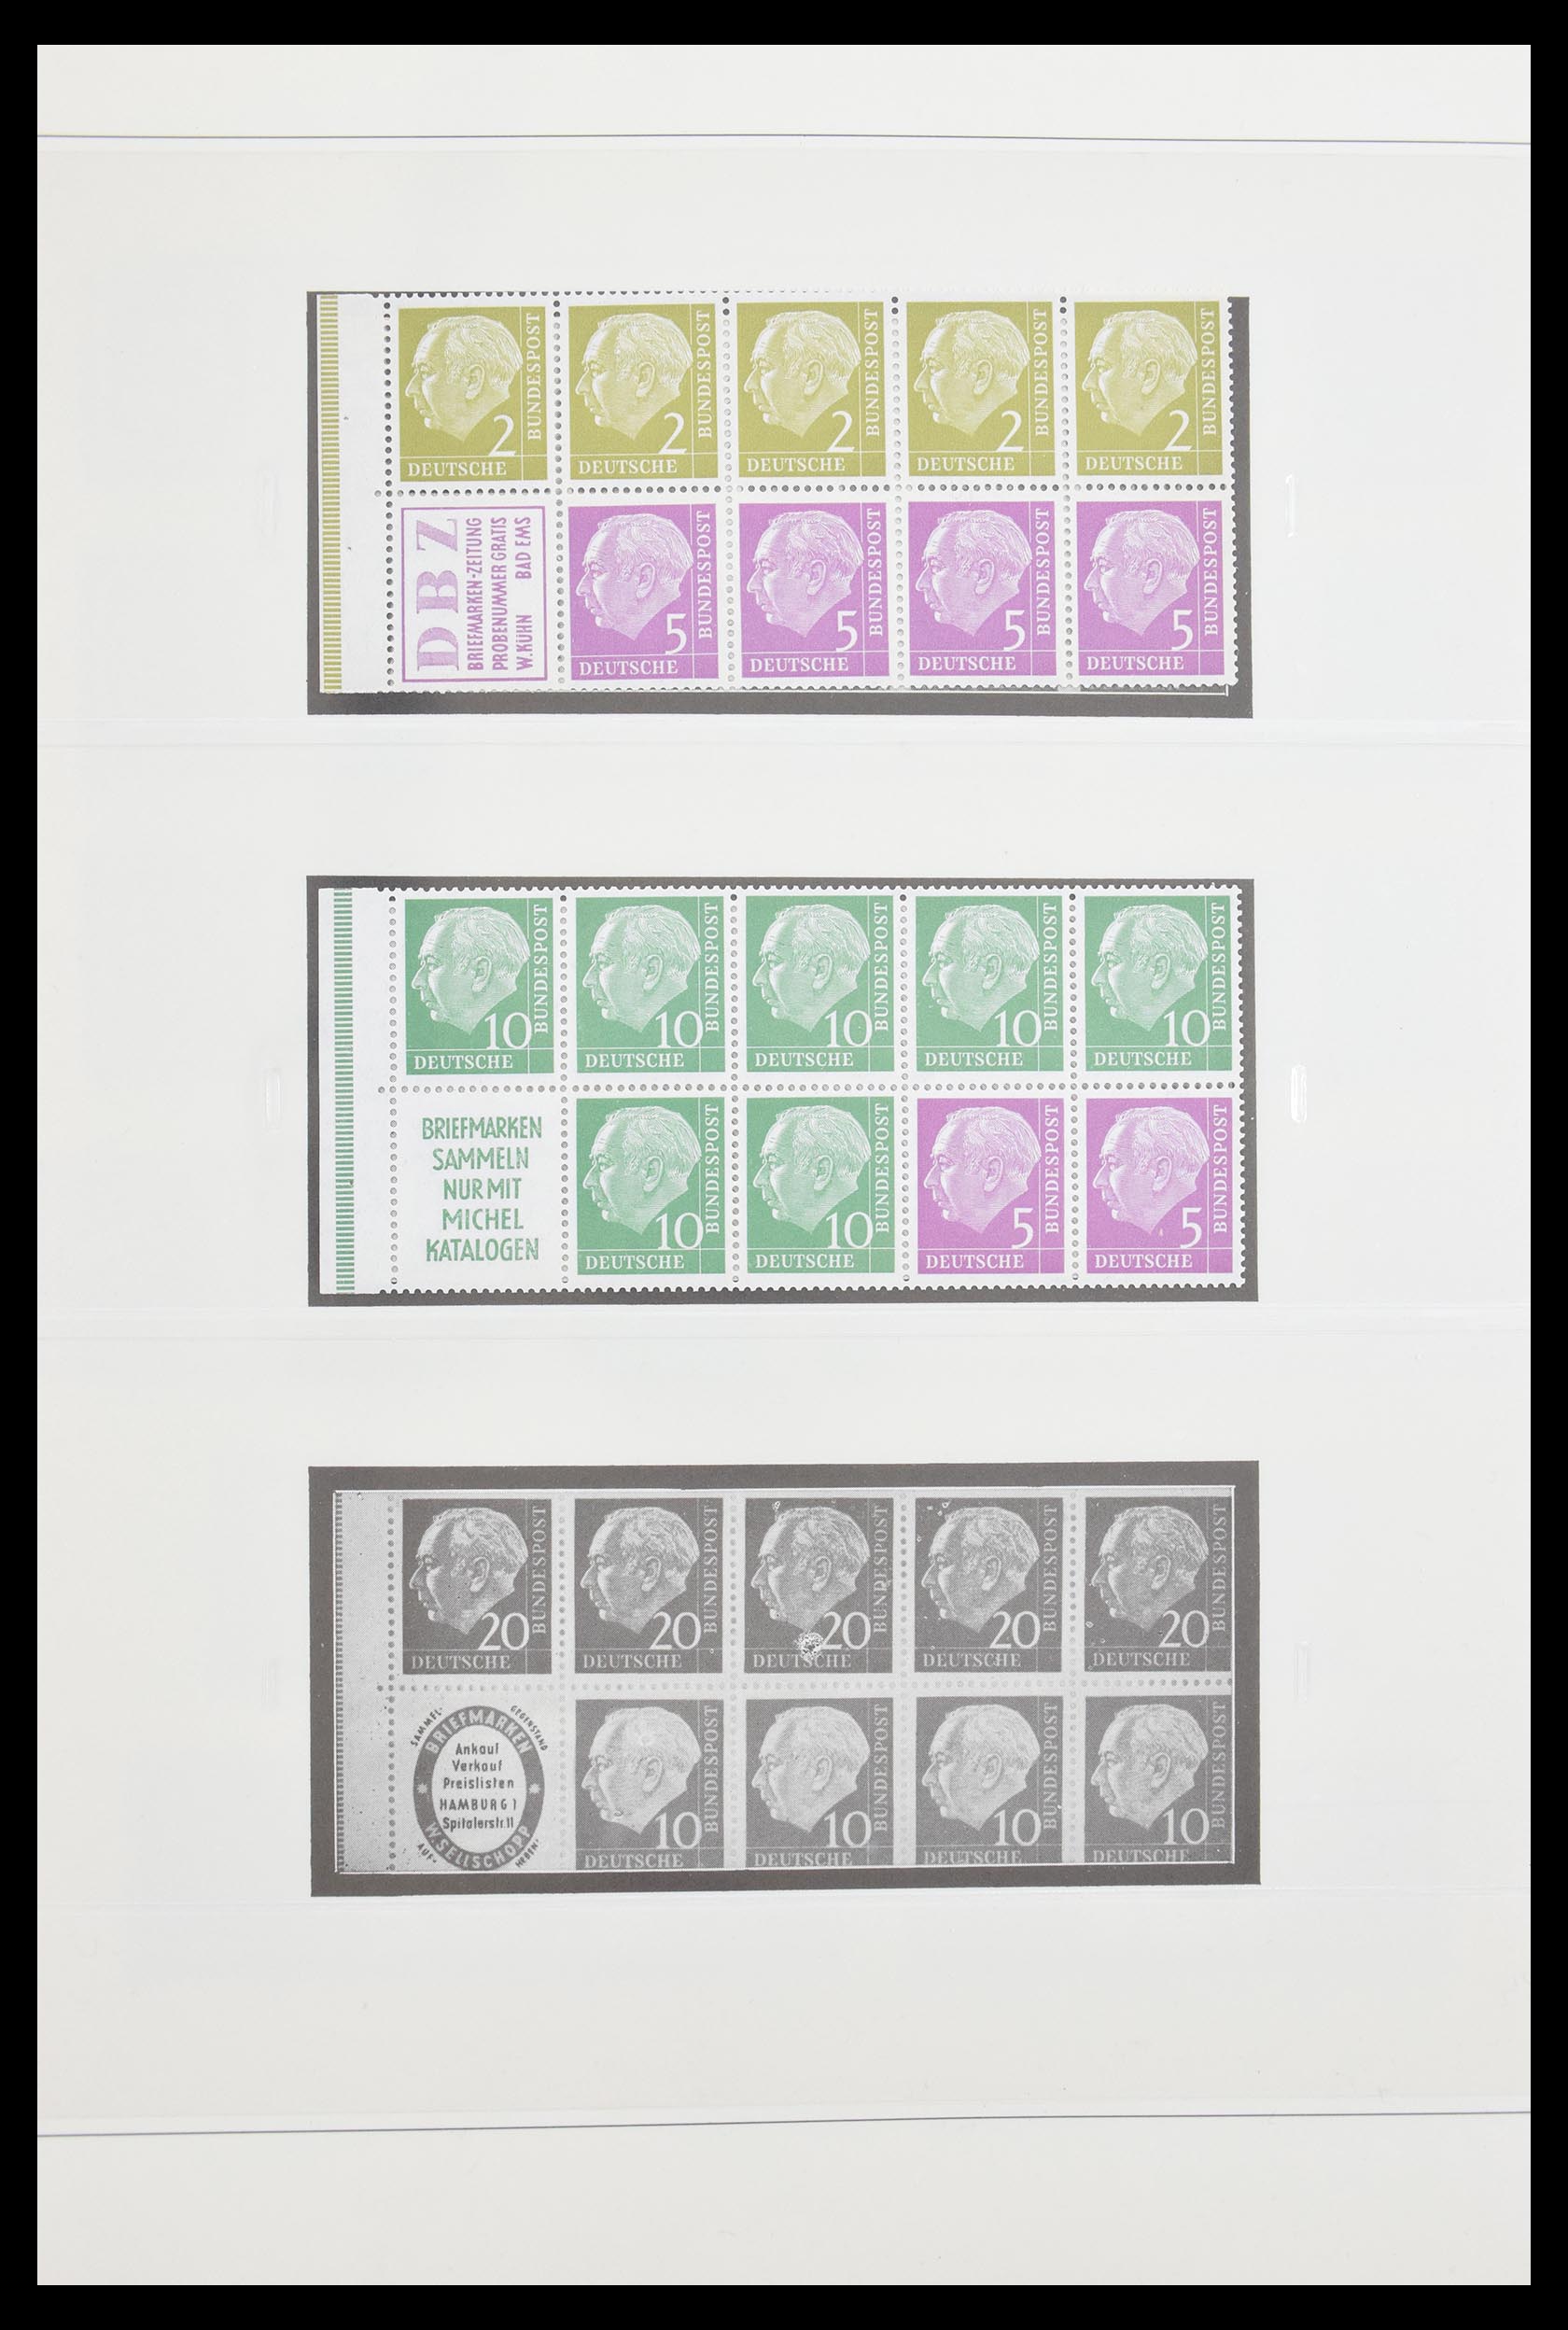 30605 006 - 30605 Bundespost combinations 1951-1974.